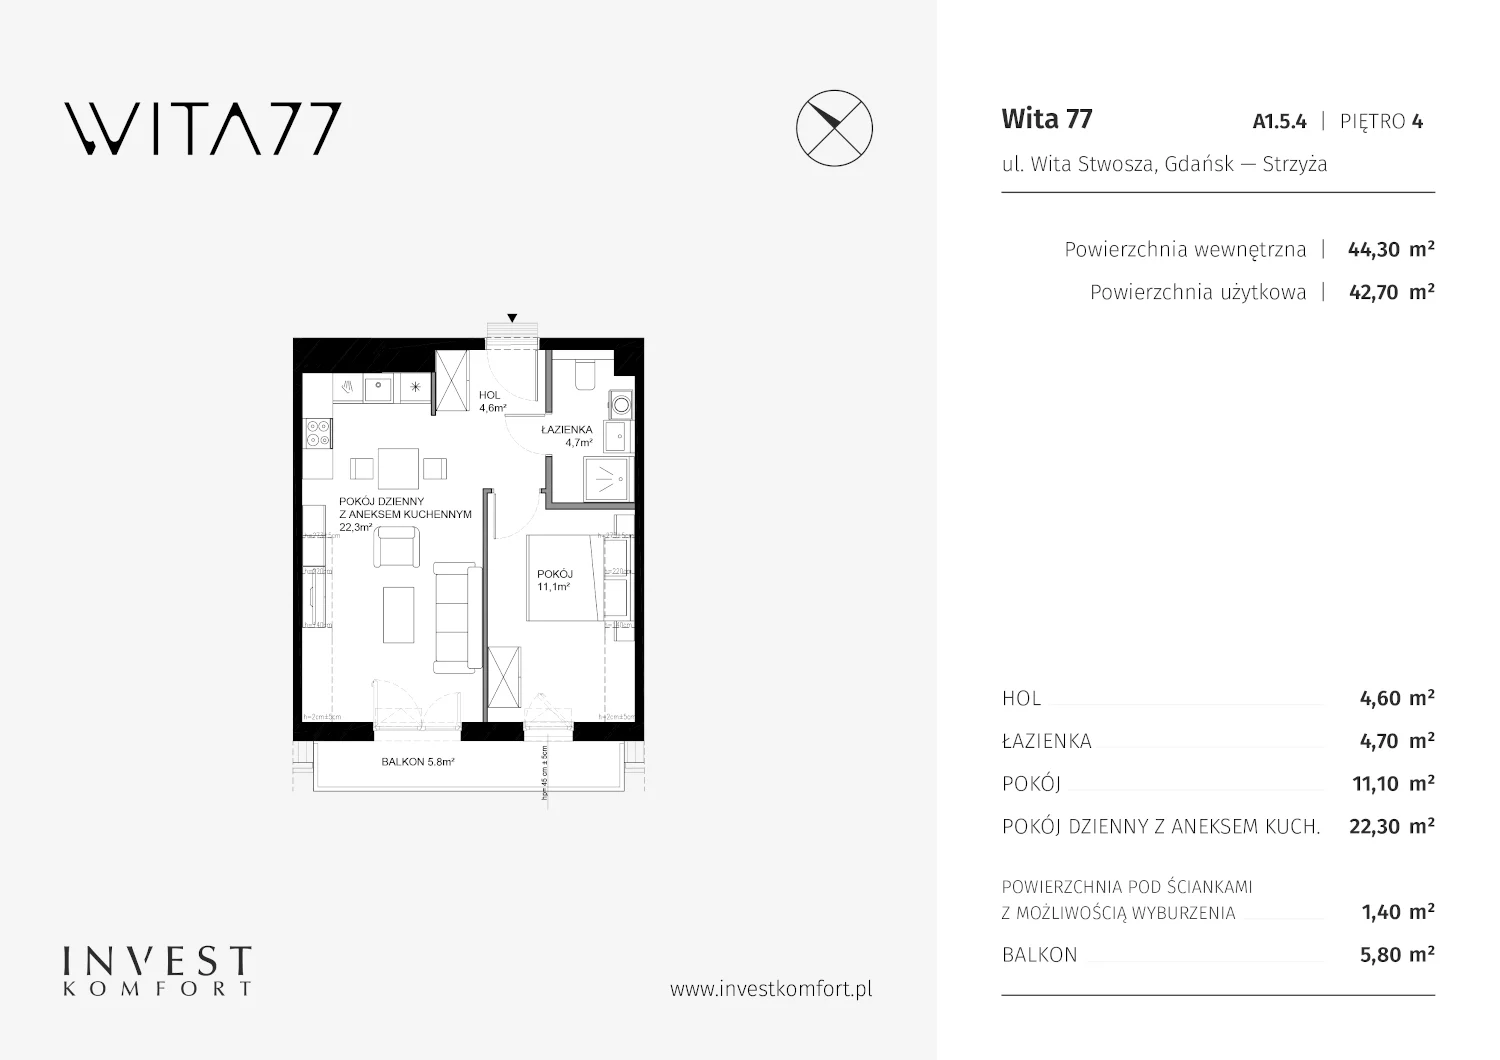 Mieszkanie 44,30 m², piętro 4, oferta nr A1.5.4, Wita 77, Gdańsk, Strzyża, ul. Wita Stwosza 77